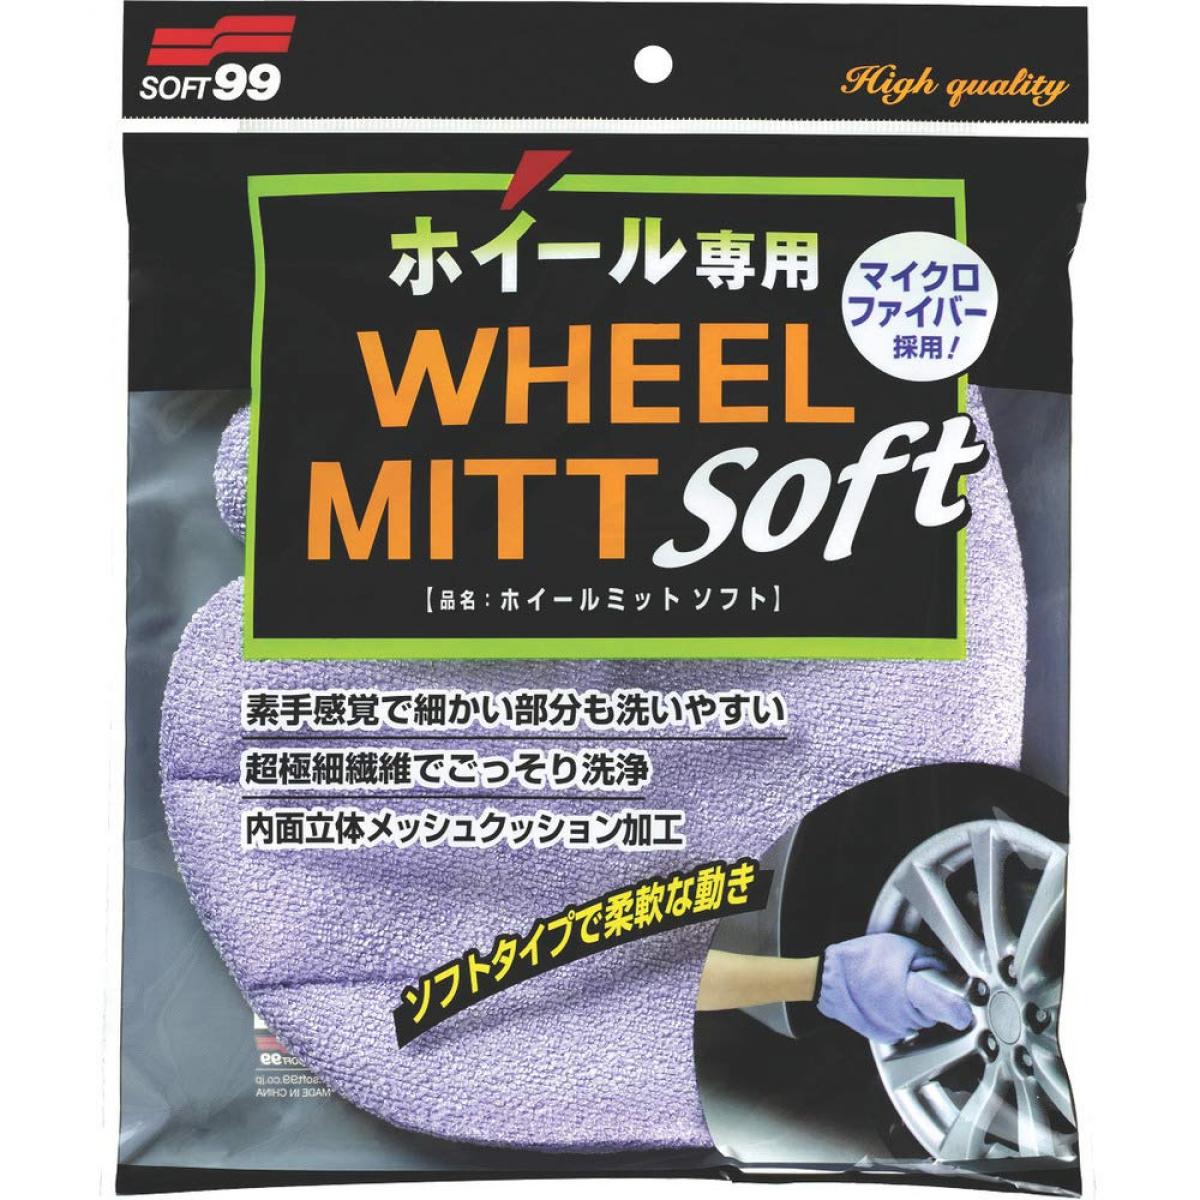 ソフト99 ホイールミット ソフト ホイールスポンジ 洗車用品 SOFT99 04159